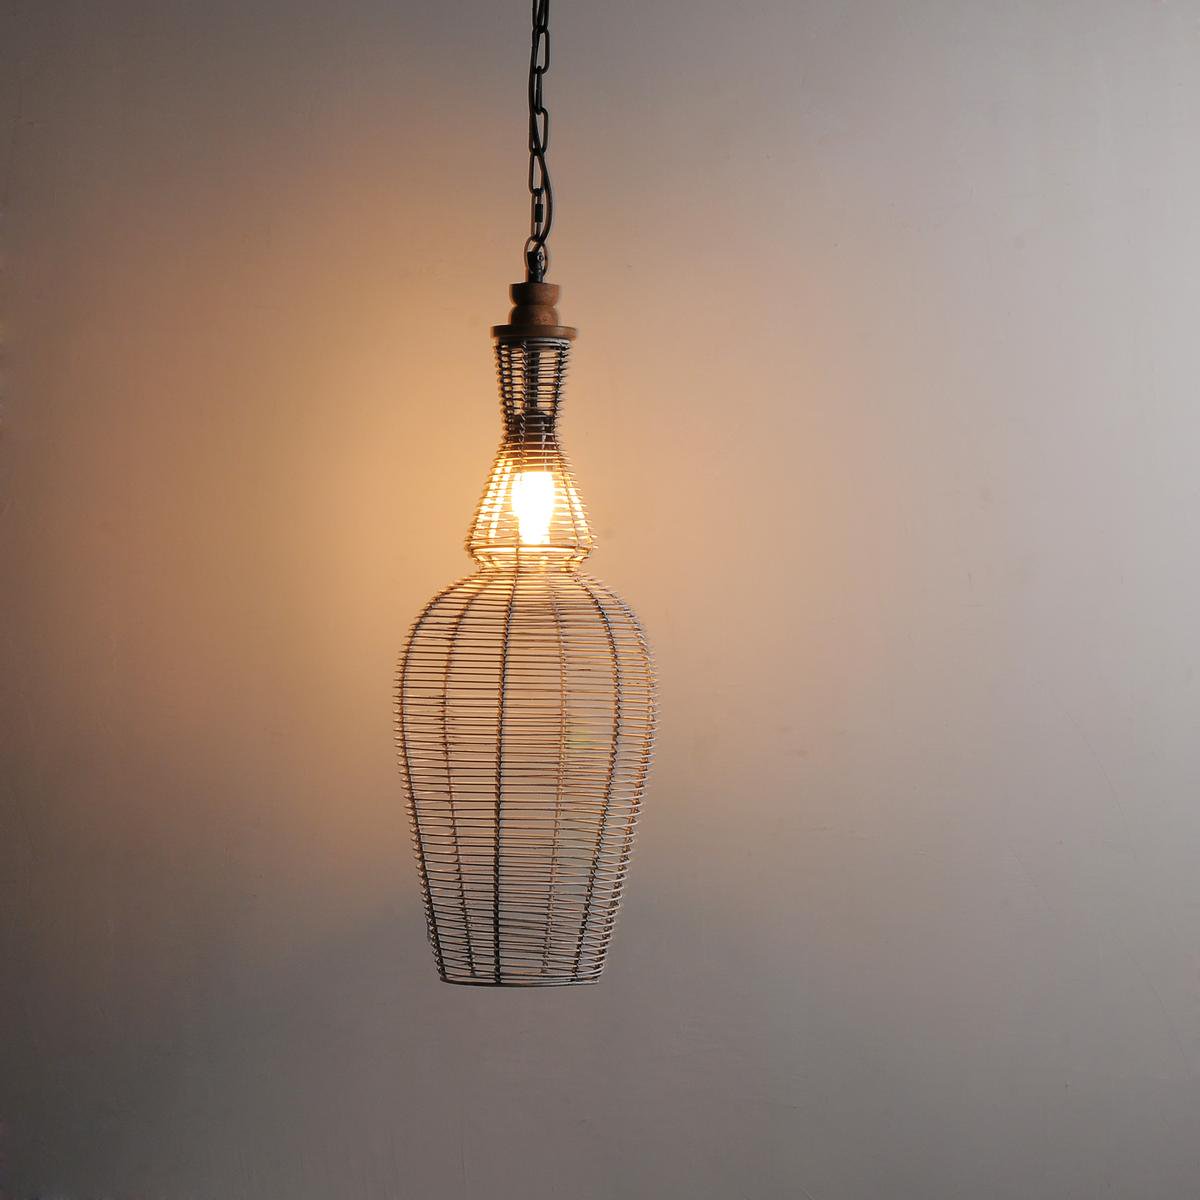 hanging lamp